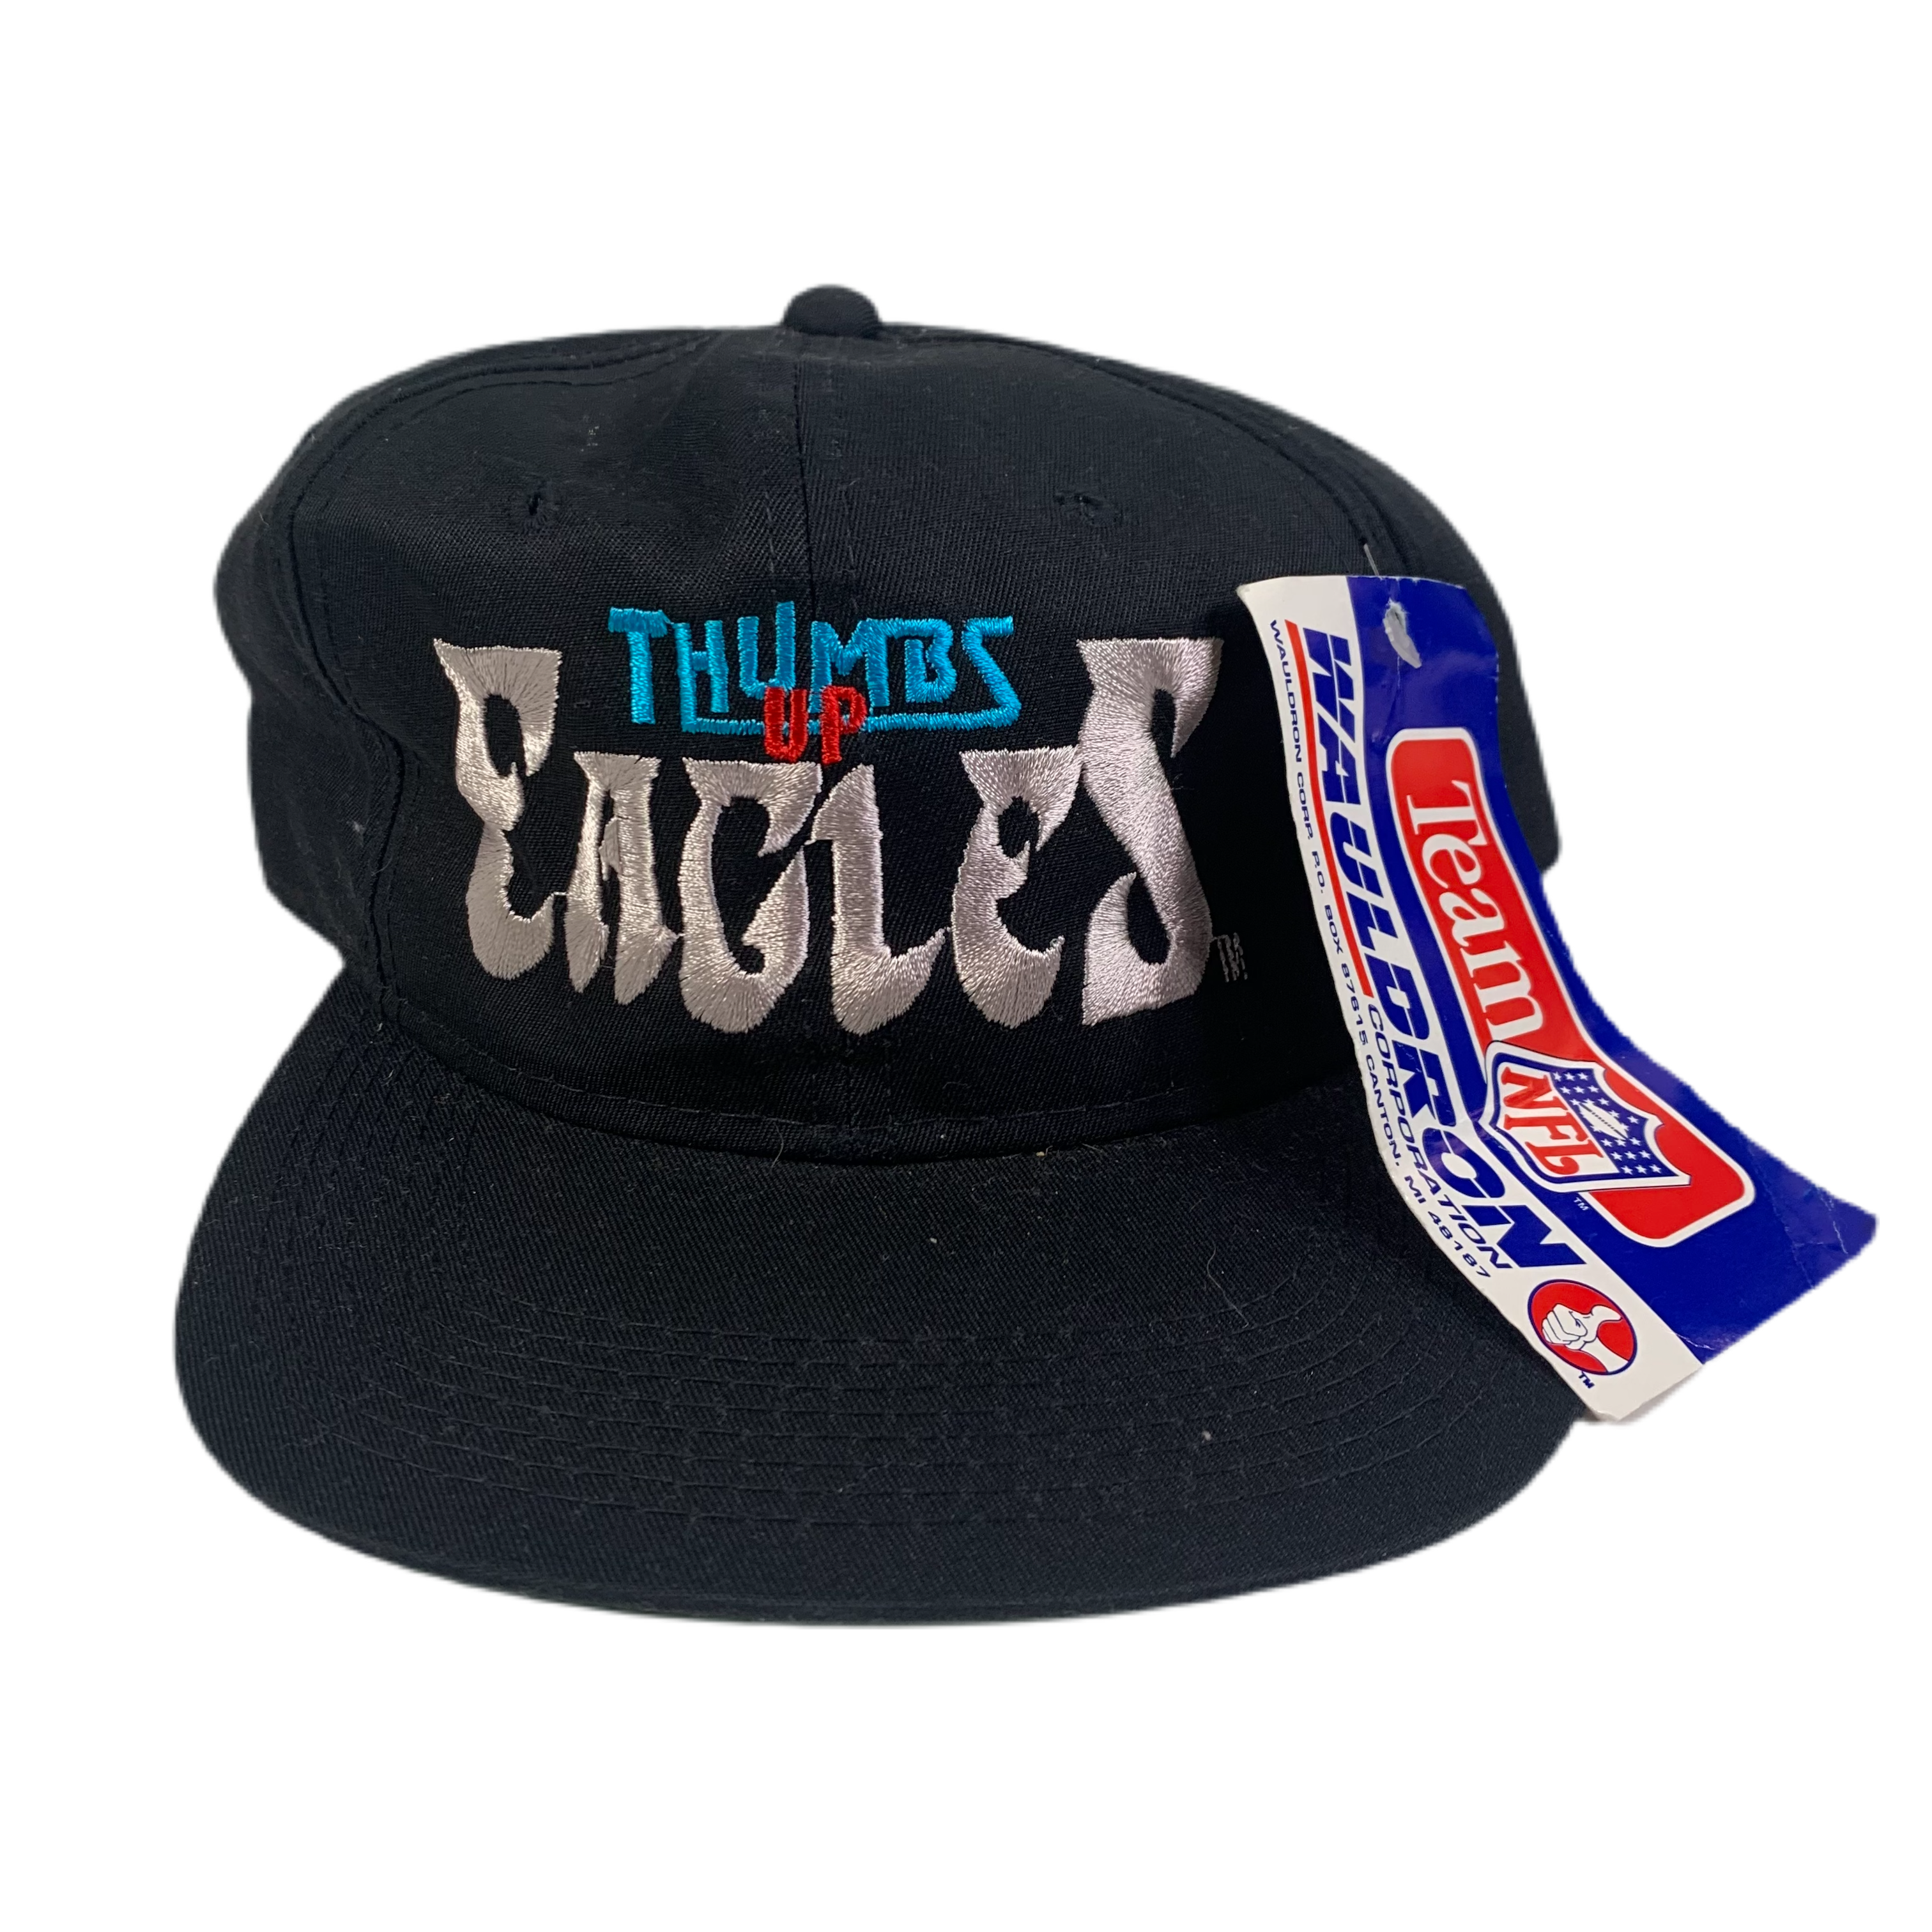 Vintage Philadelphia Eagles Thumbs Up! Hat